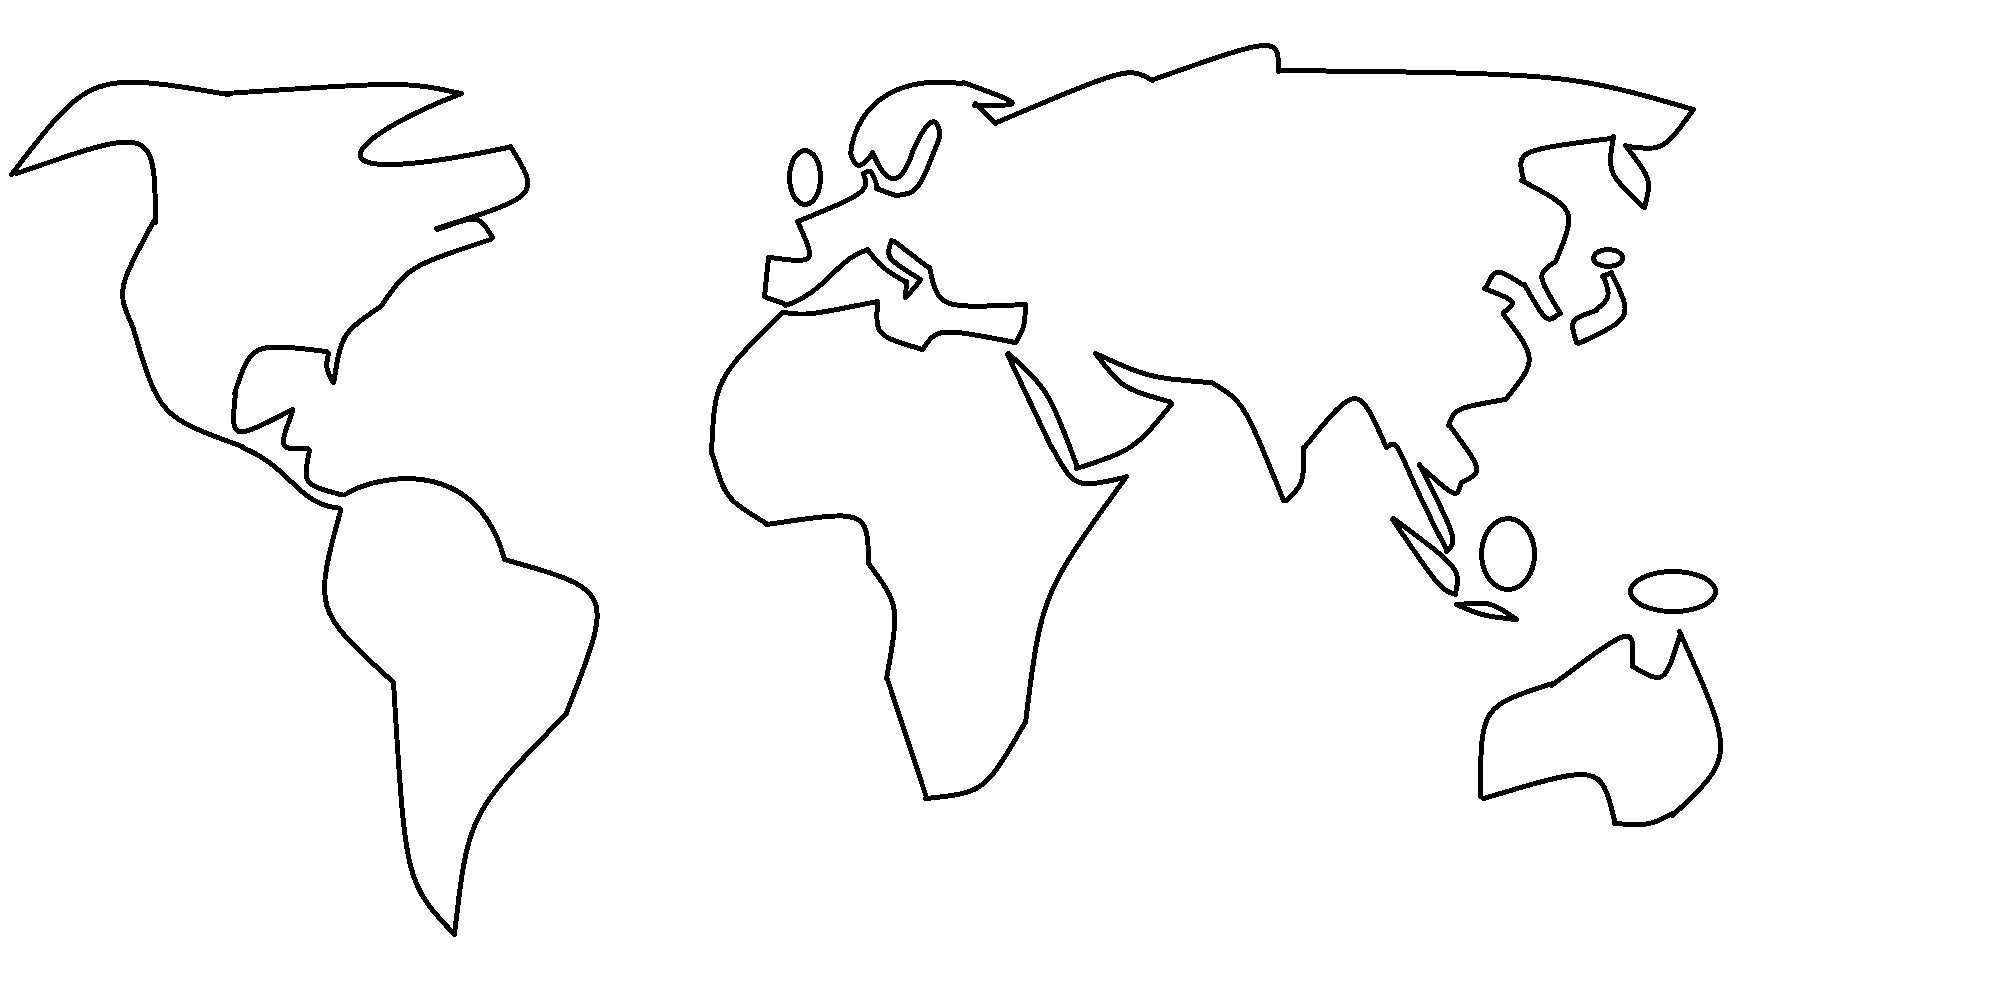 Schéma d'une planisphère terrestre